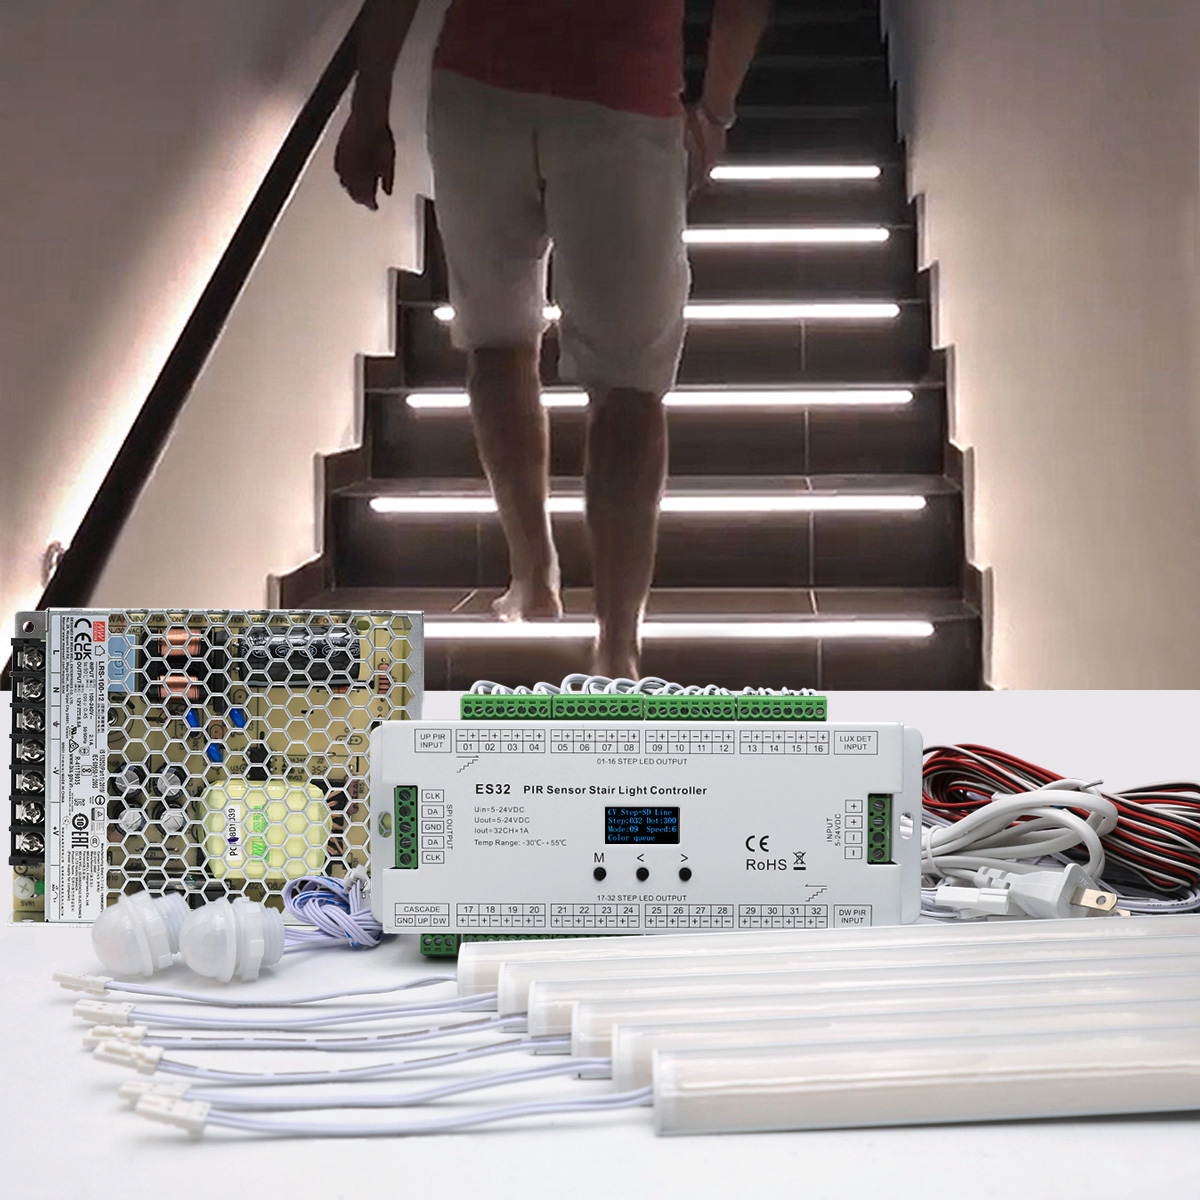 How to Install Motion Sensor LED Stair Lights Kit?